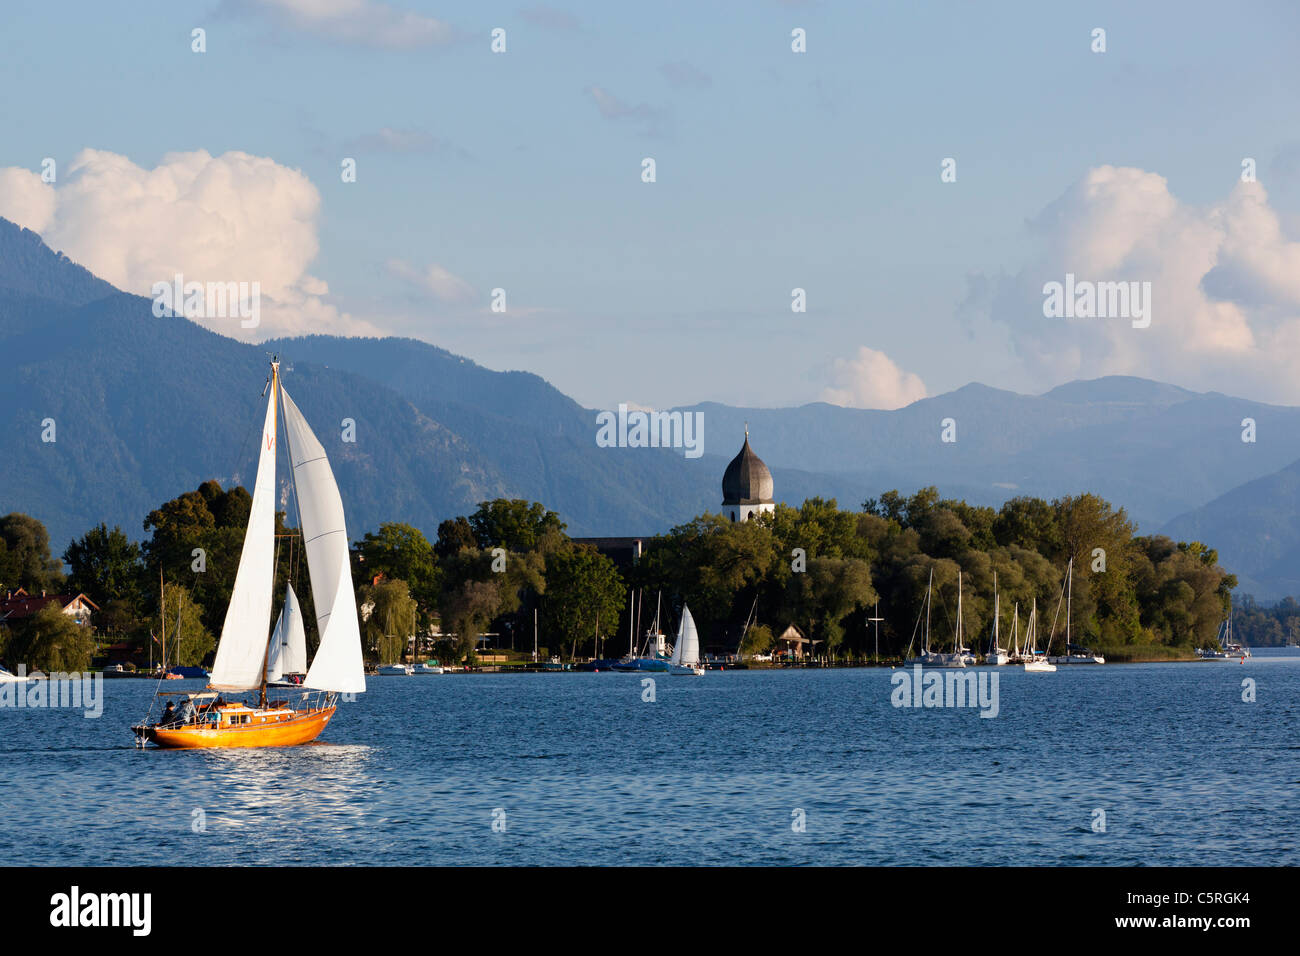 Deutschland, Bayern, Chiemgauer Alpen, Chiemsee, Blick von Segelschiffen auf See Stockfoto